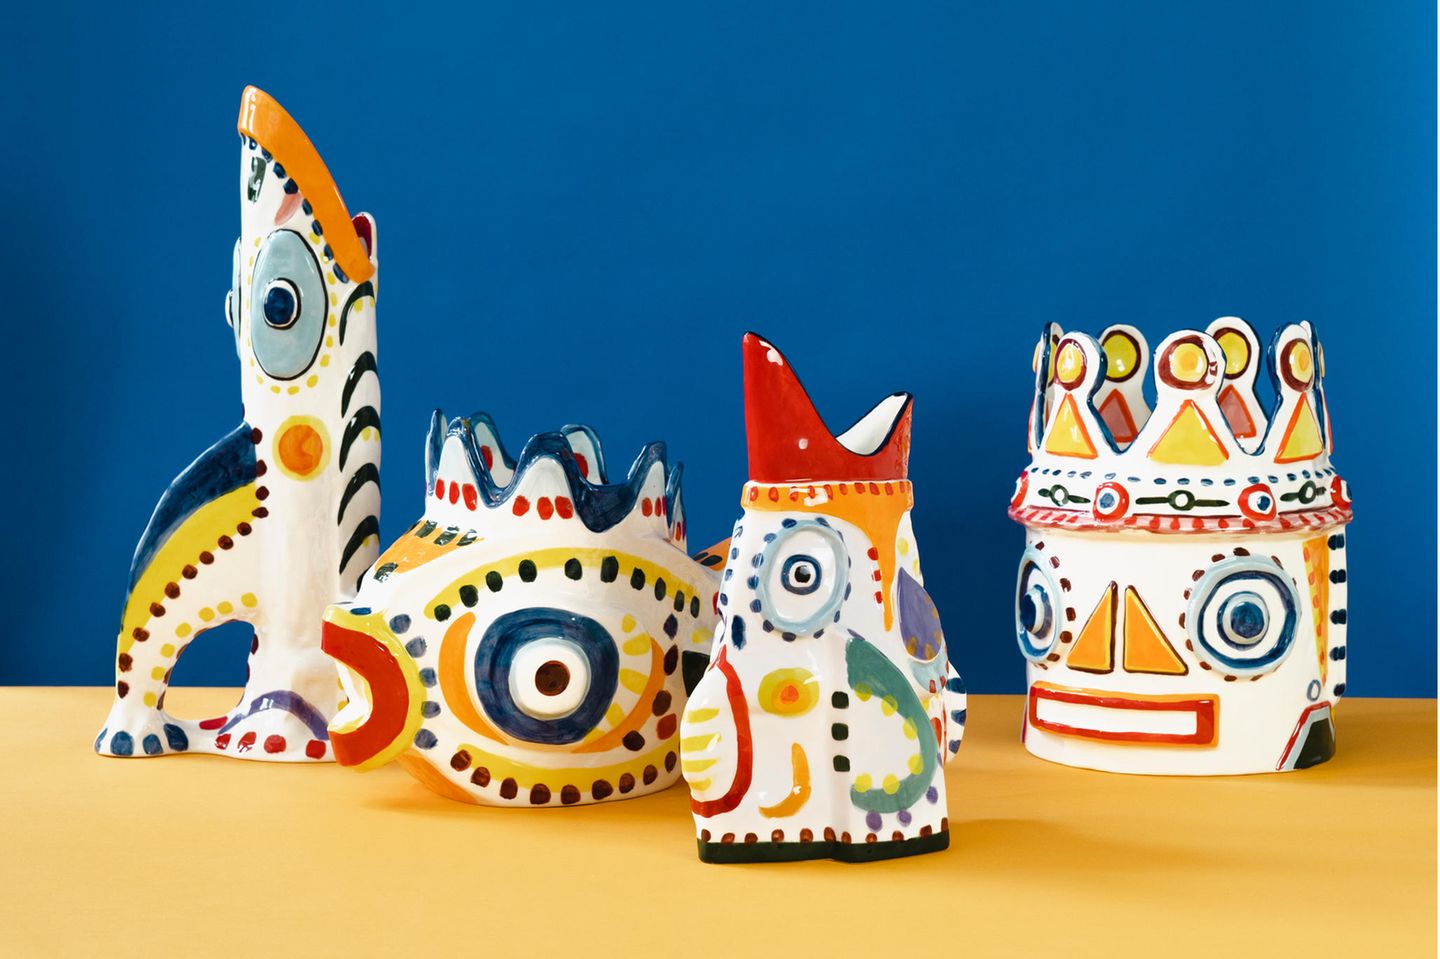 Vier abstrakte Vasen in Form von Köpfen und Fischen stehen auf blau-gelben Grund